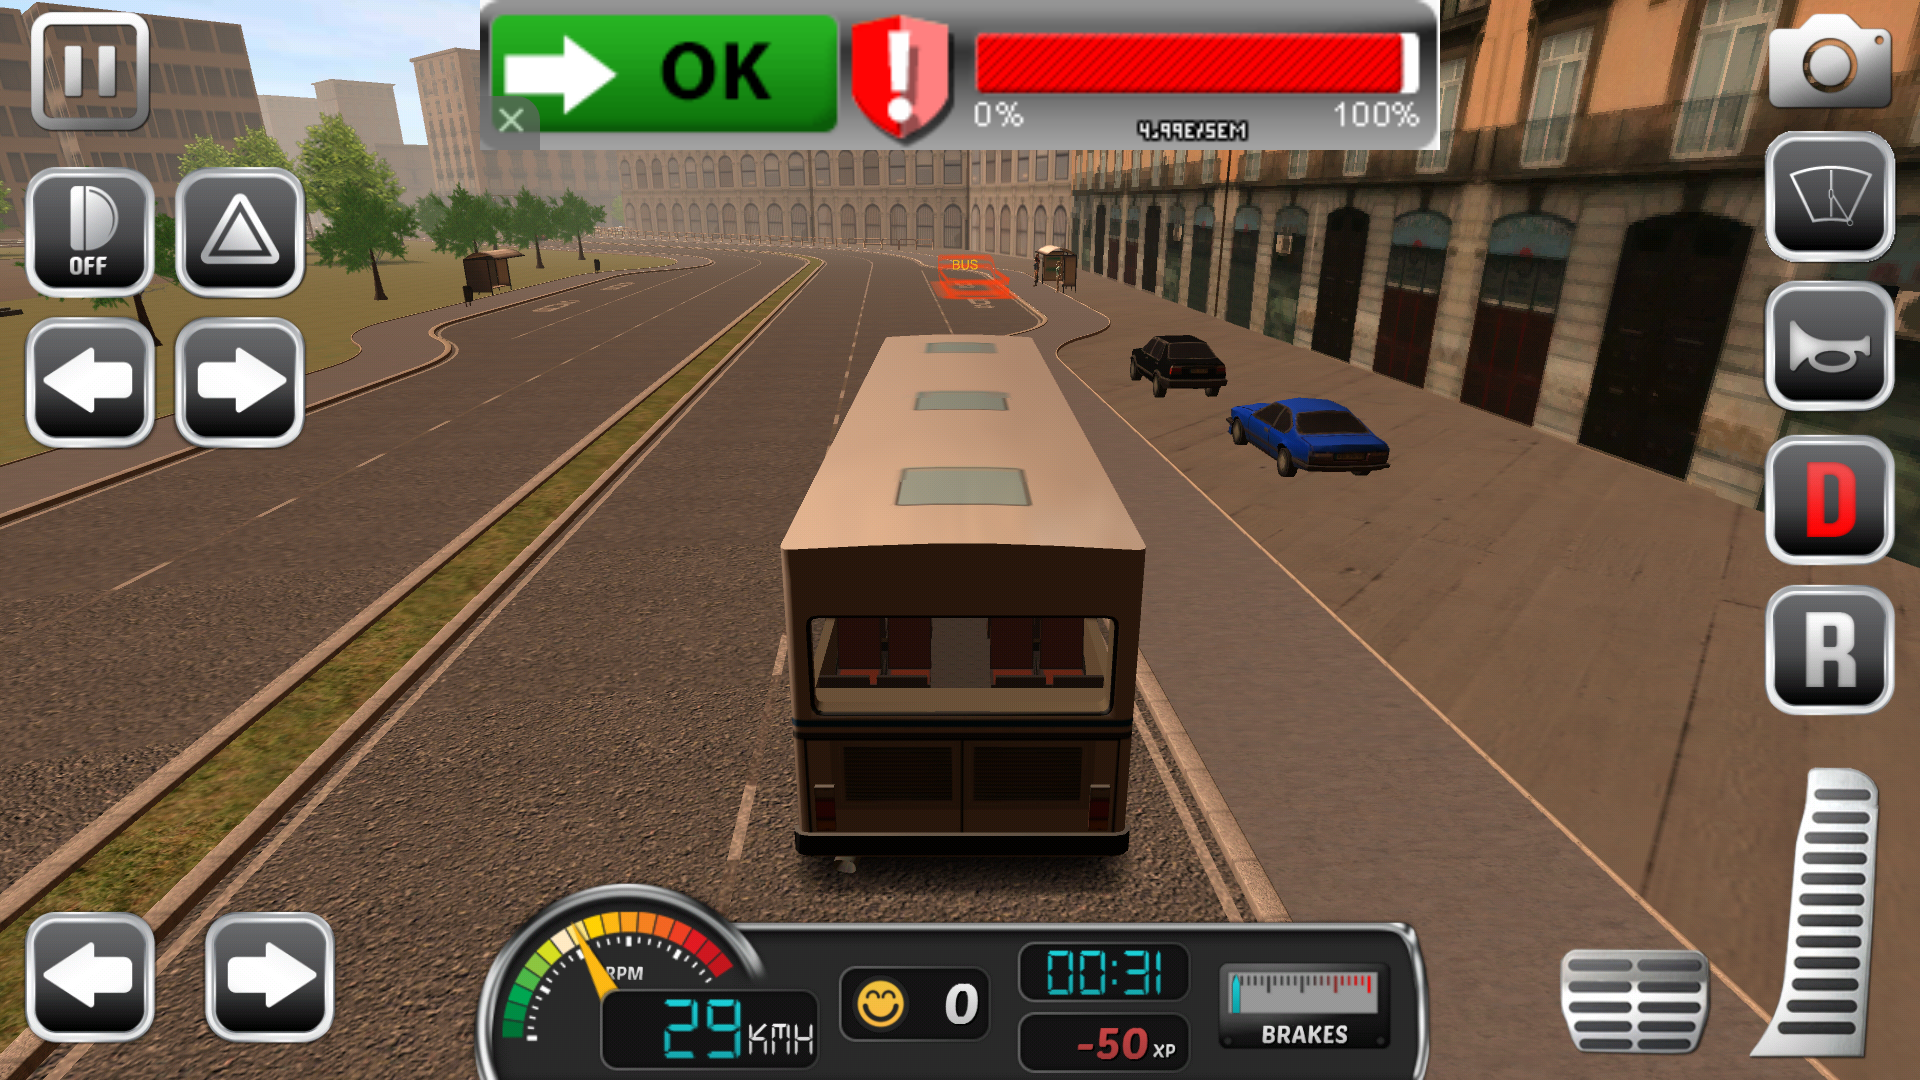 jeux de bus simulator